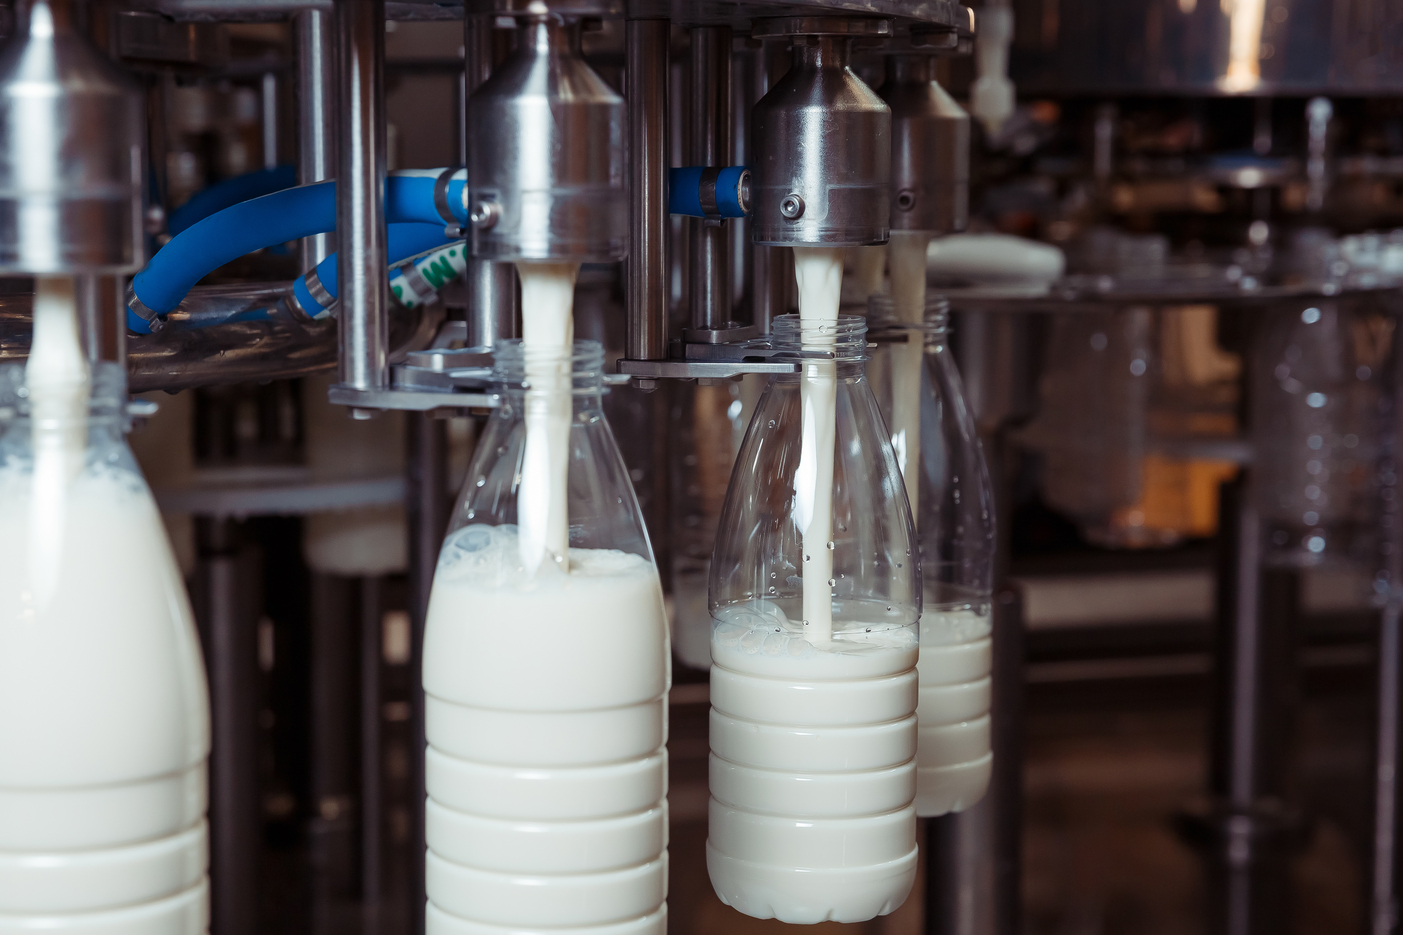 Дисбаланс на рынке молочной продукции: производство растет, а спрос падает из-за высоких цен